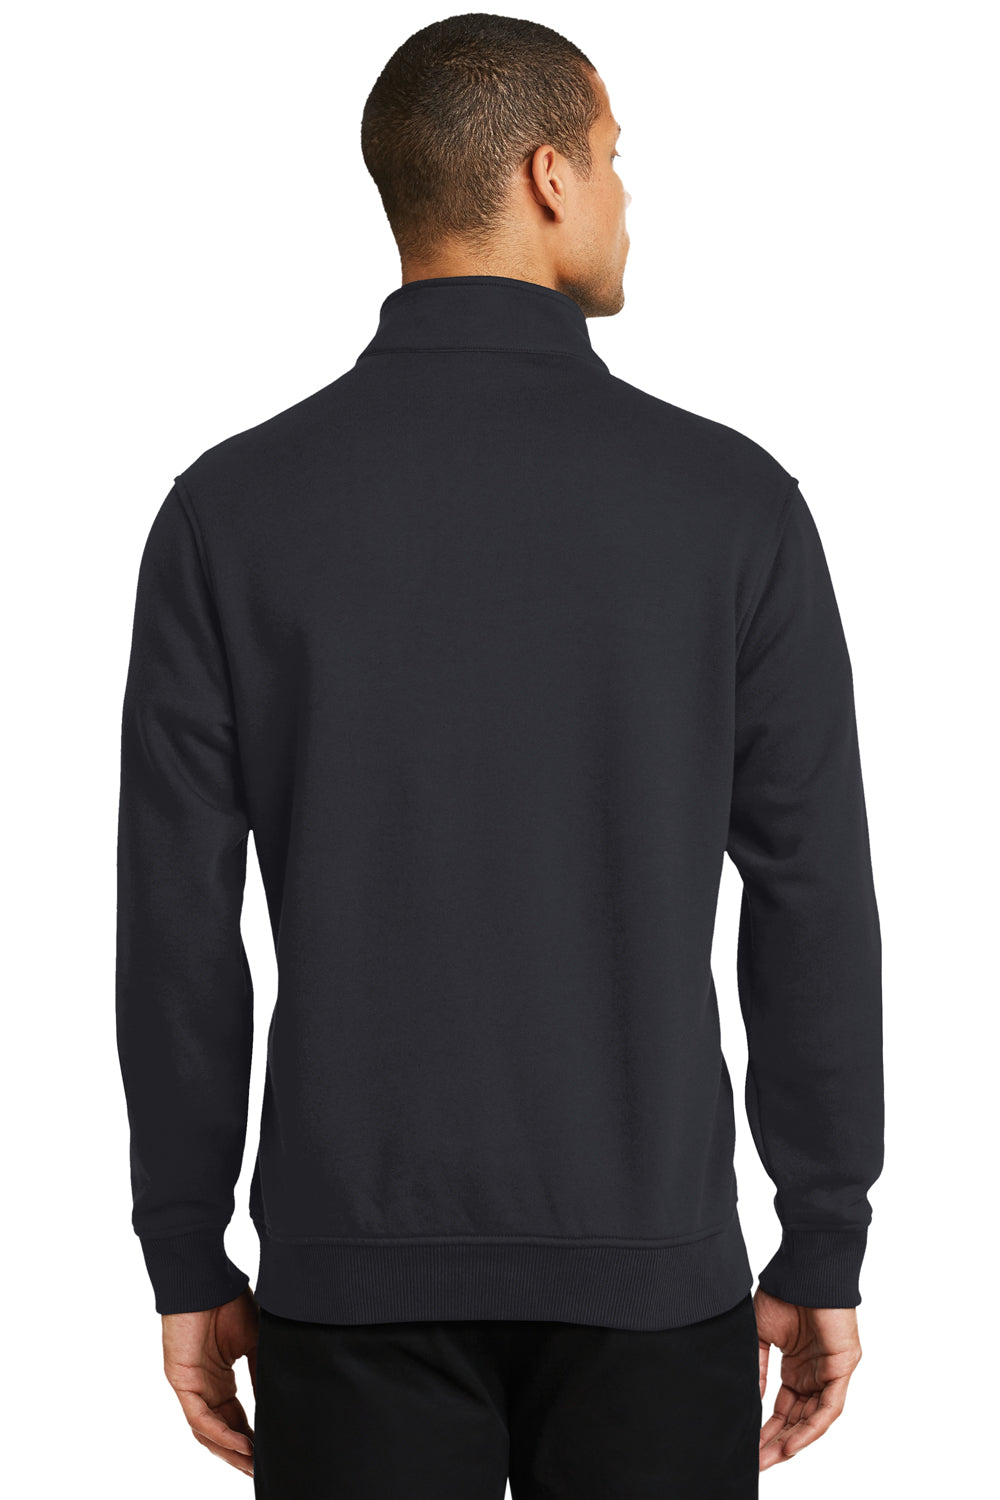 CornerStone CS626 Mens Fleece 1/4 Zip Sweatshirt Navy Blue Back